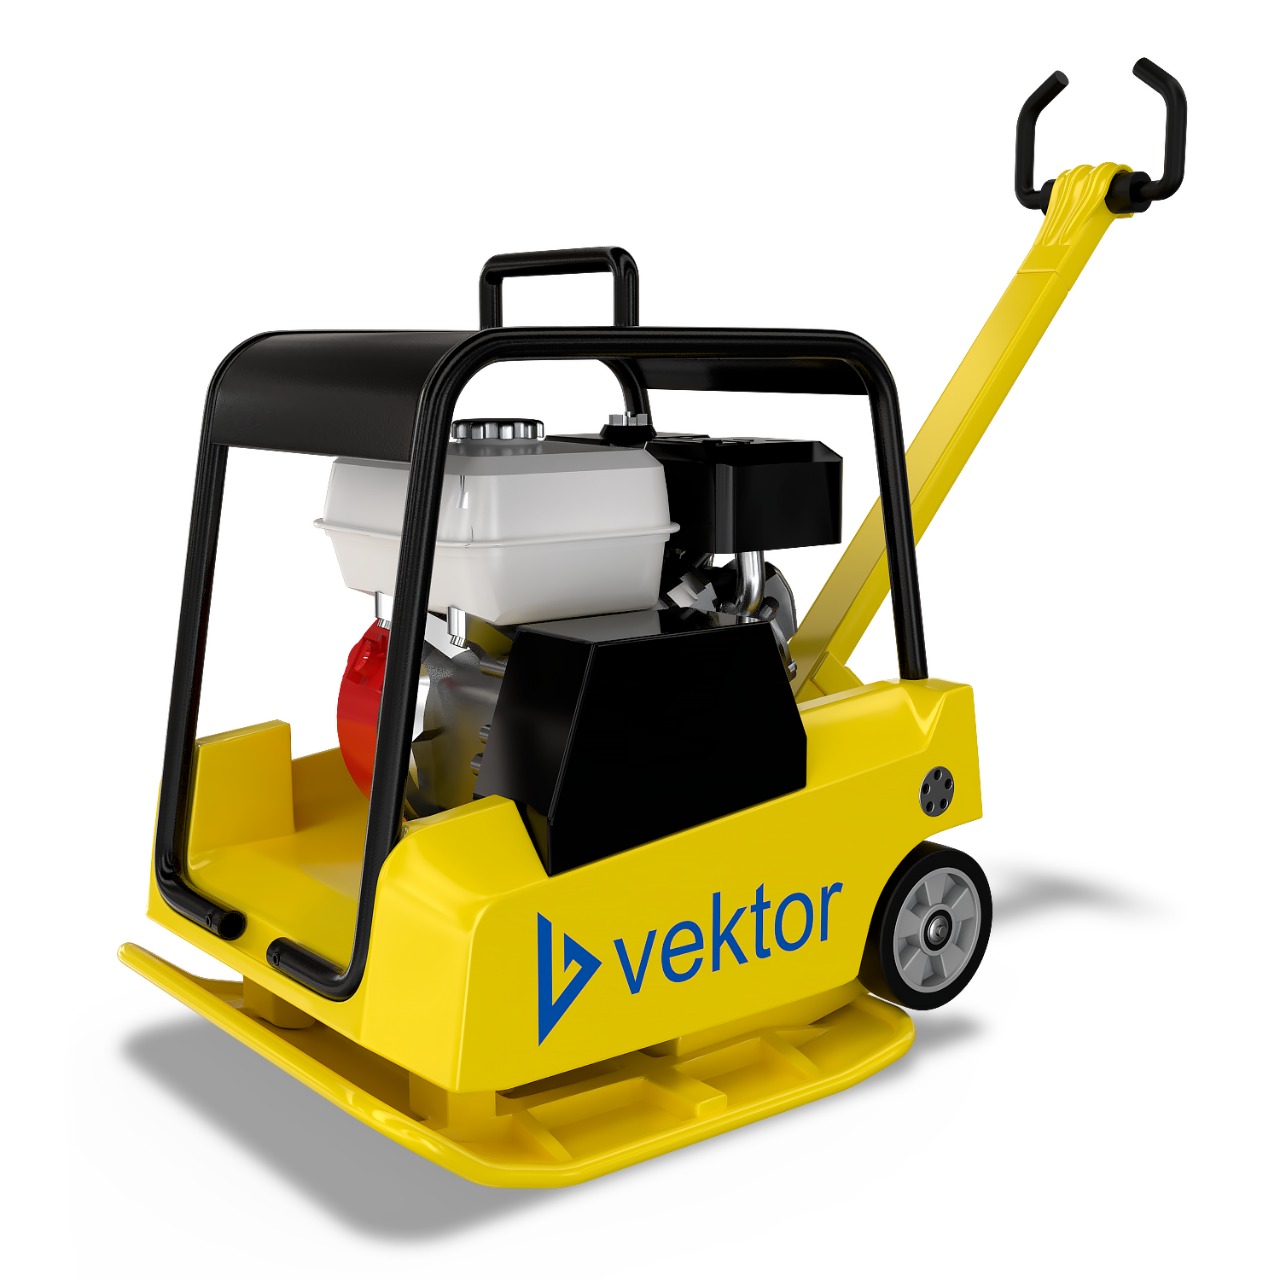  Vektor VPG-160С – Купить оборудование Vektor от производителя